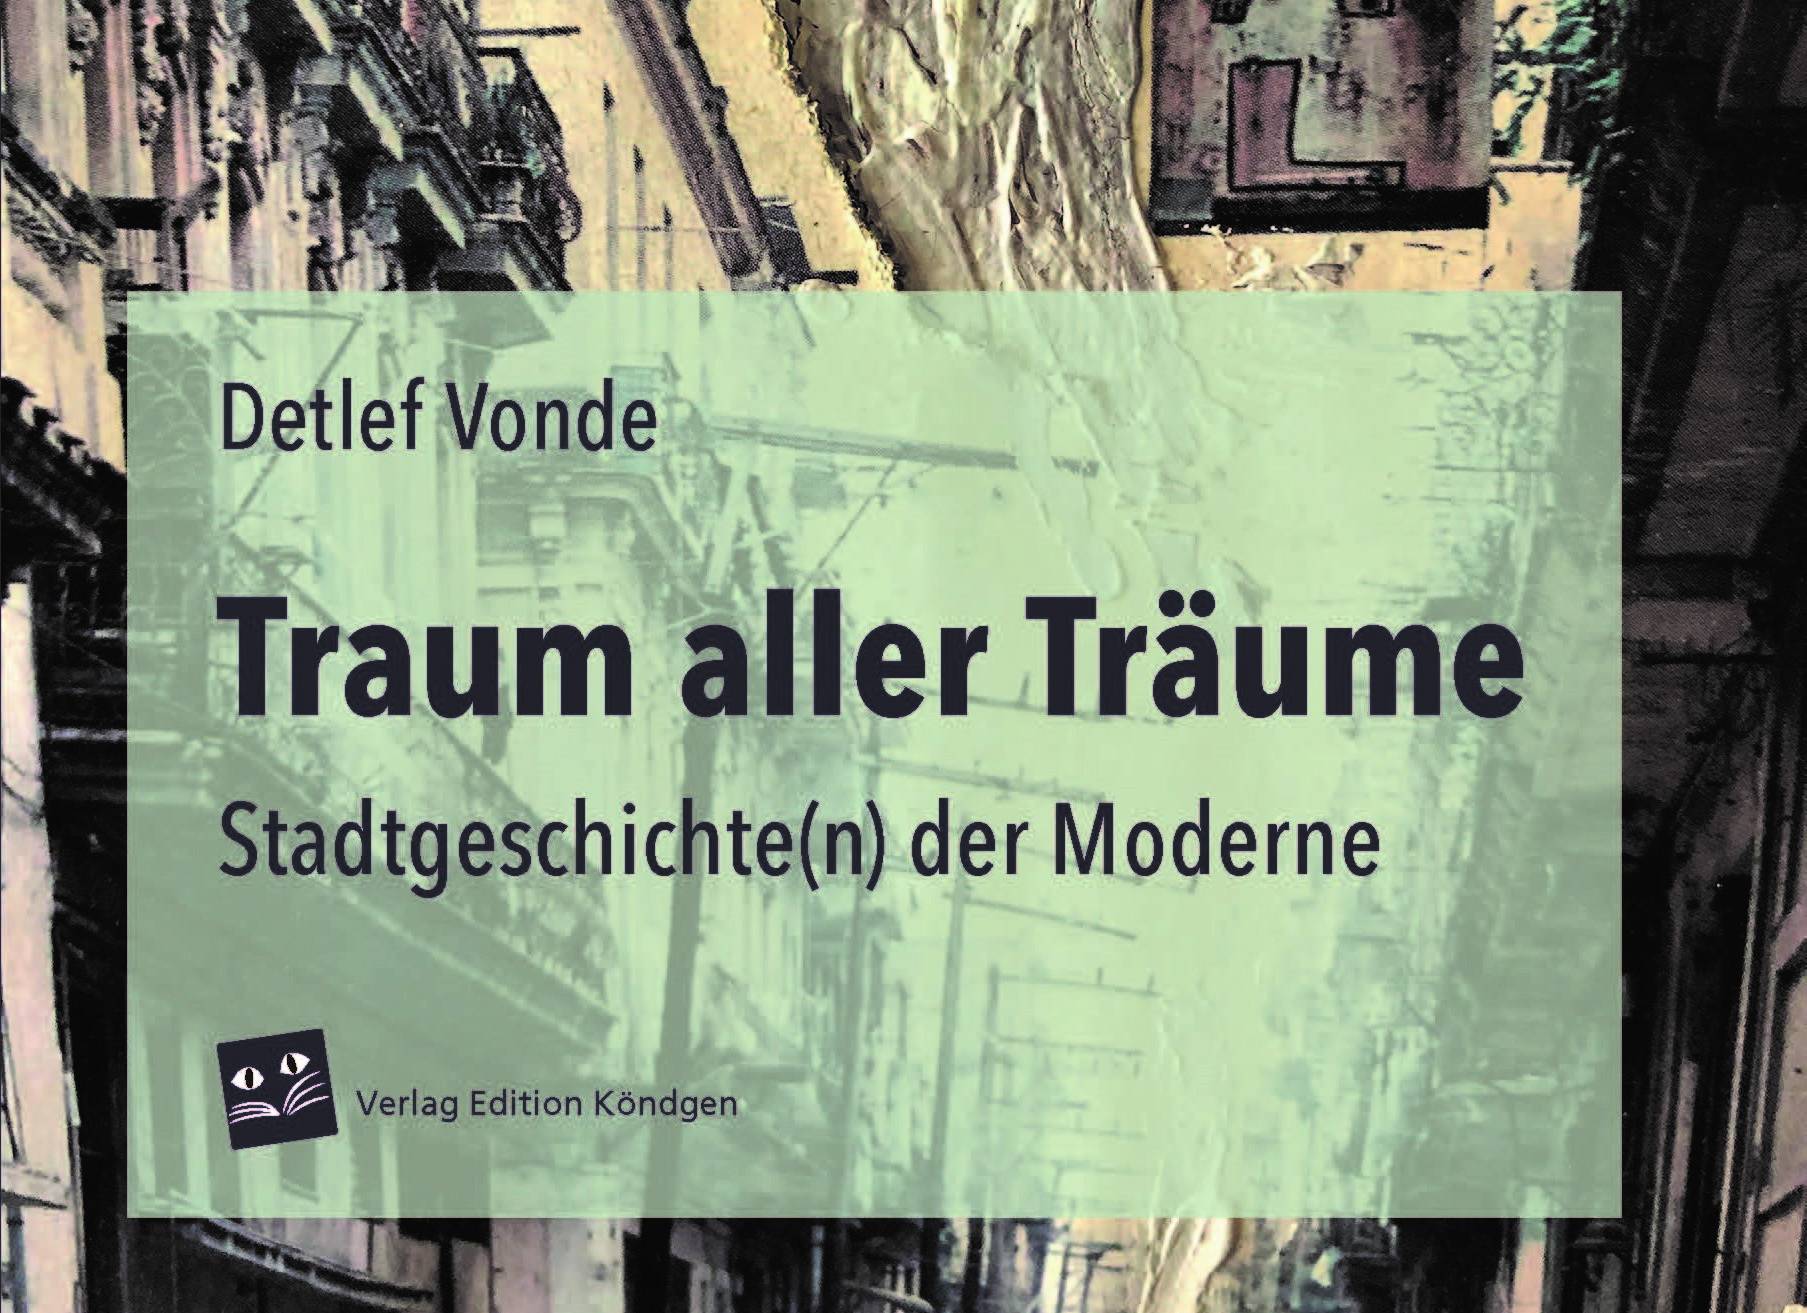  "Traum aller Träume - Stadtgeschichte(n) der Moderne" von Detlef Vonde ist im Verlag Edition Köndgen erschienen und kostet 29,95 Euro. 